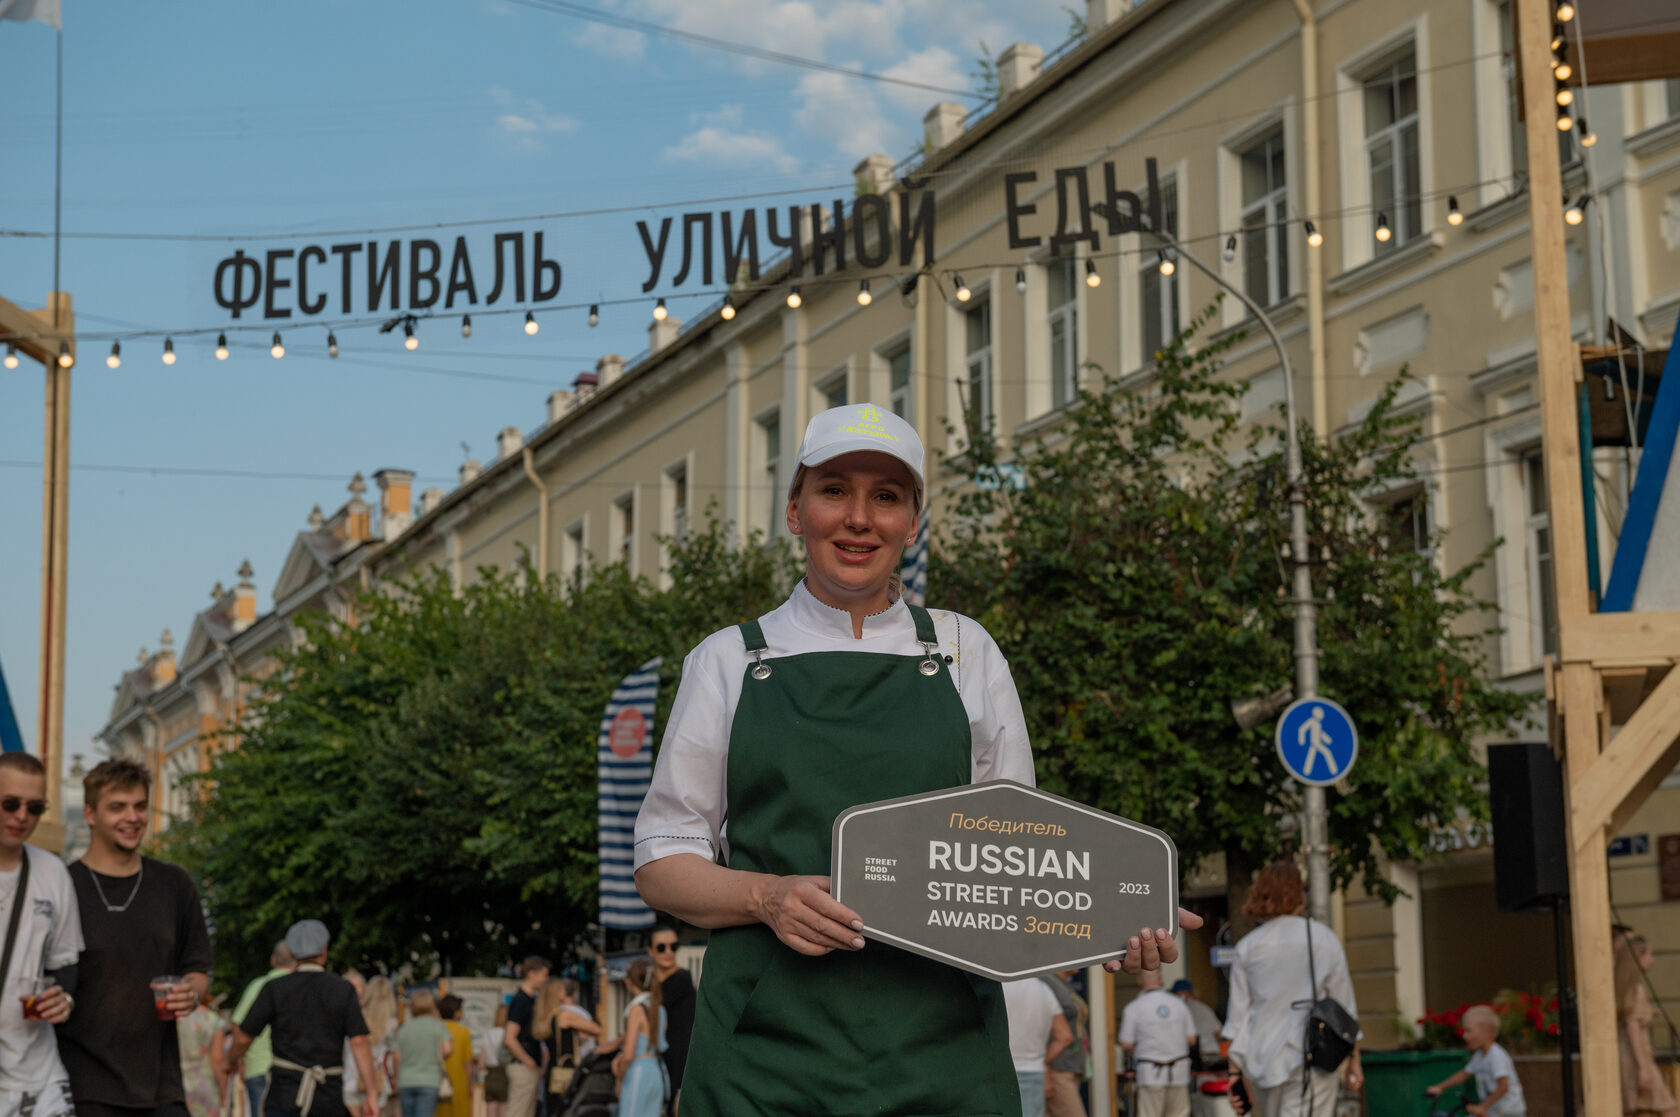 Фестиваль уличной еды в Смоленске